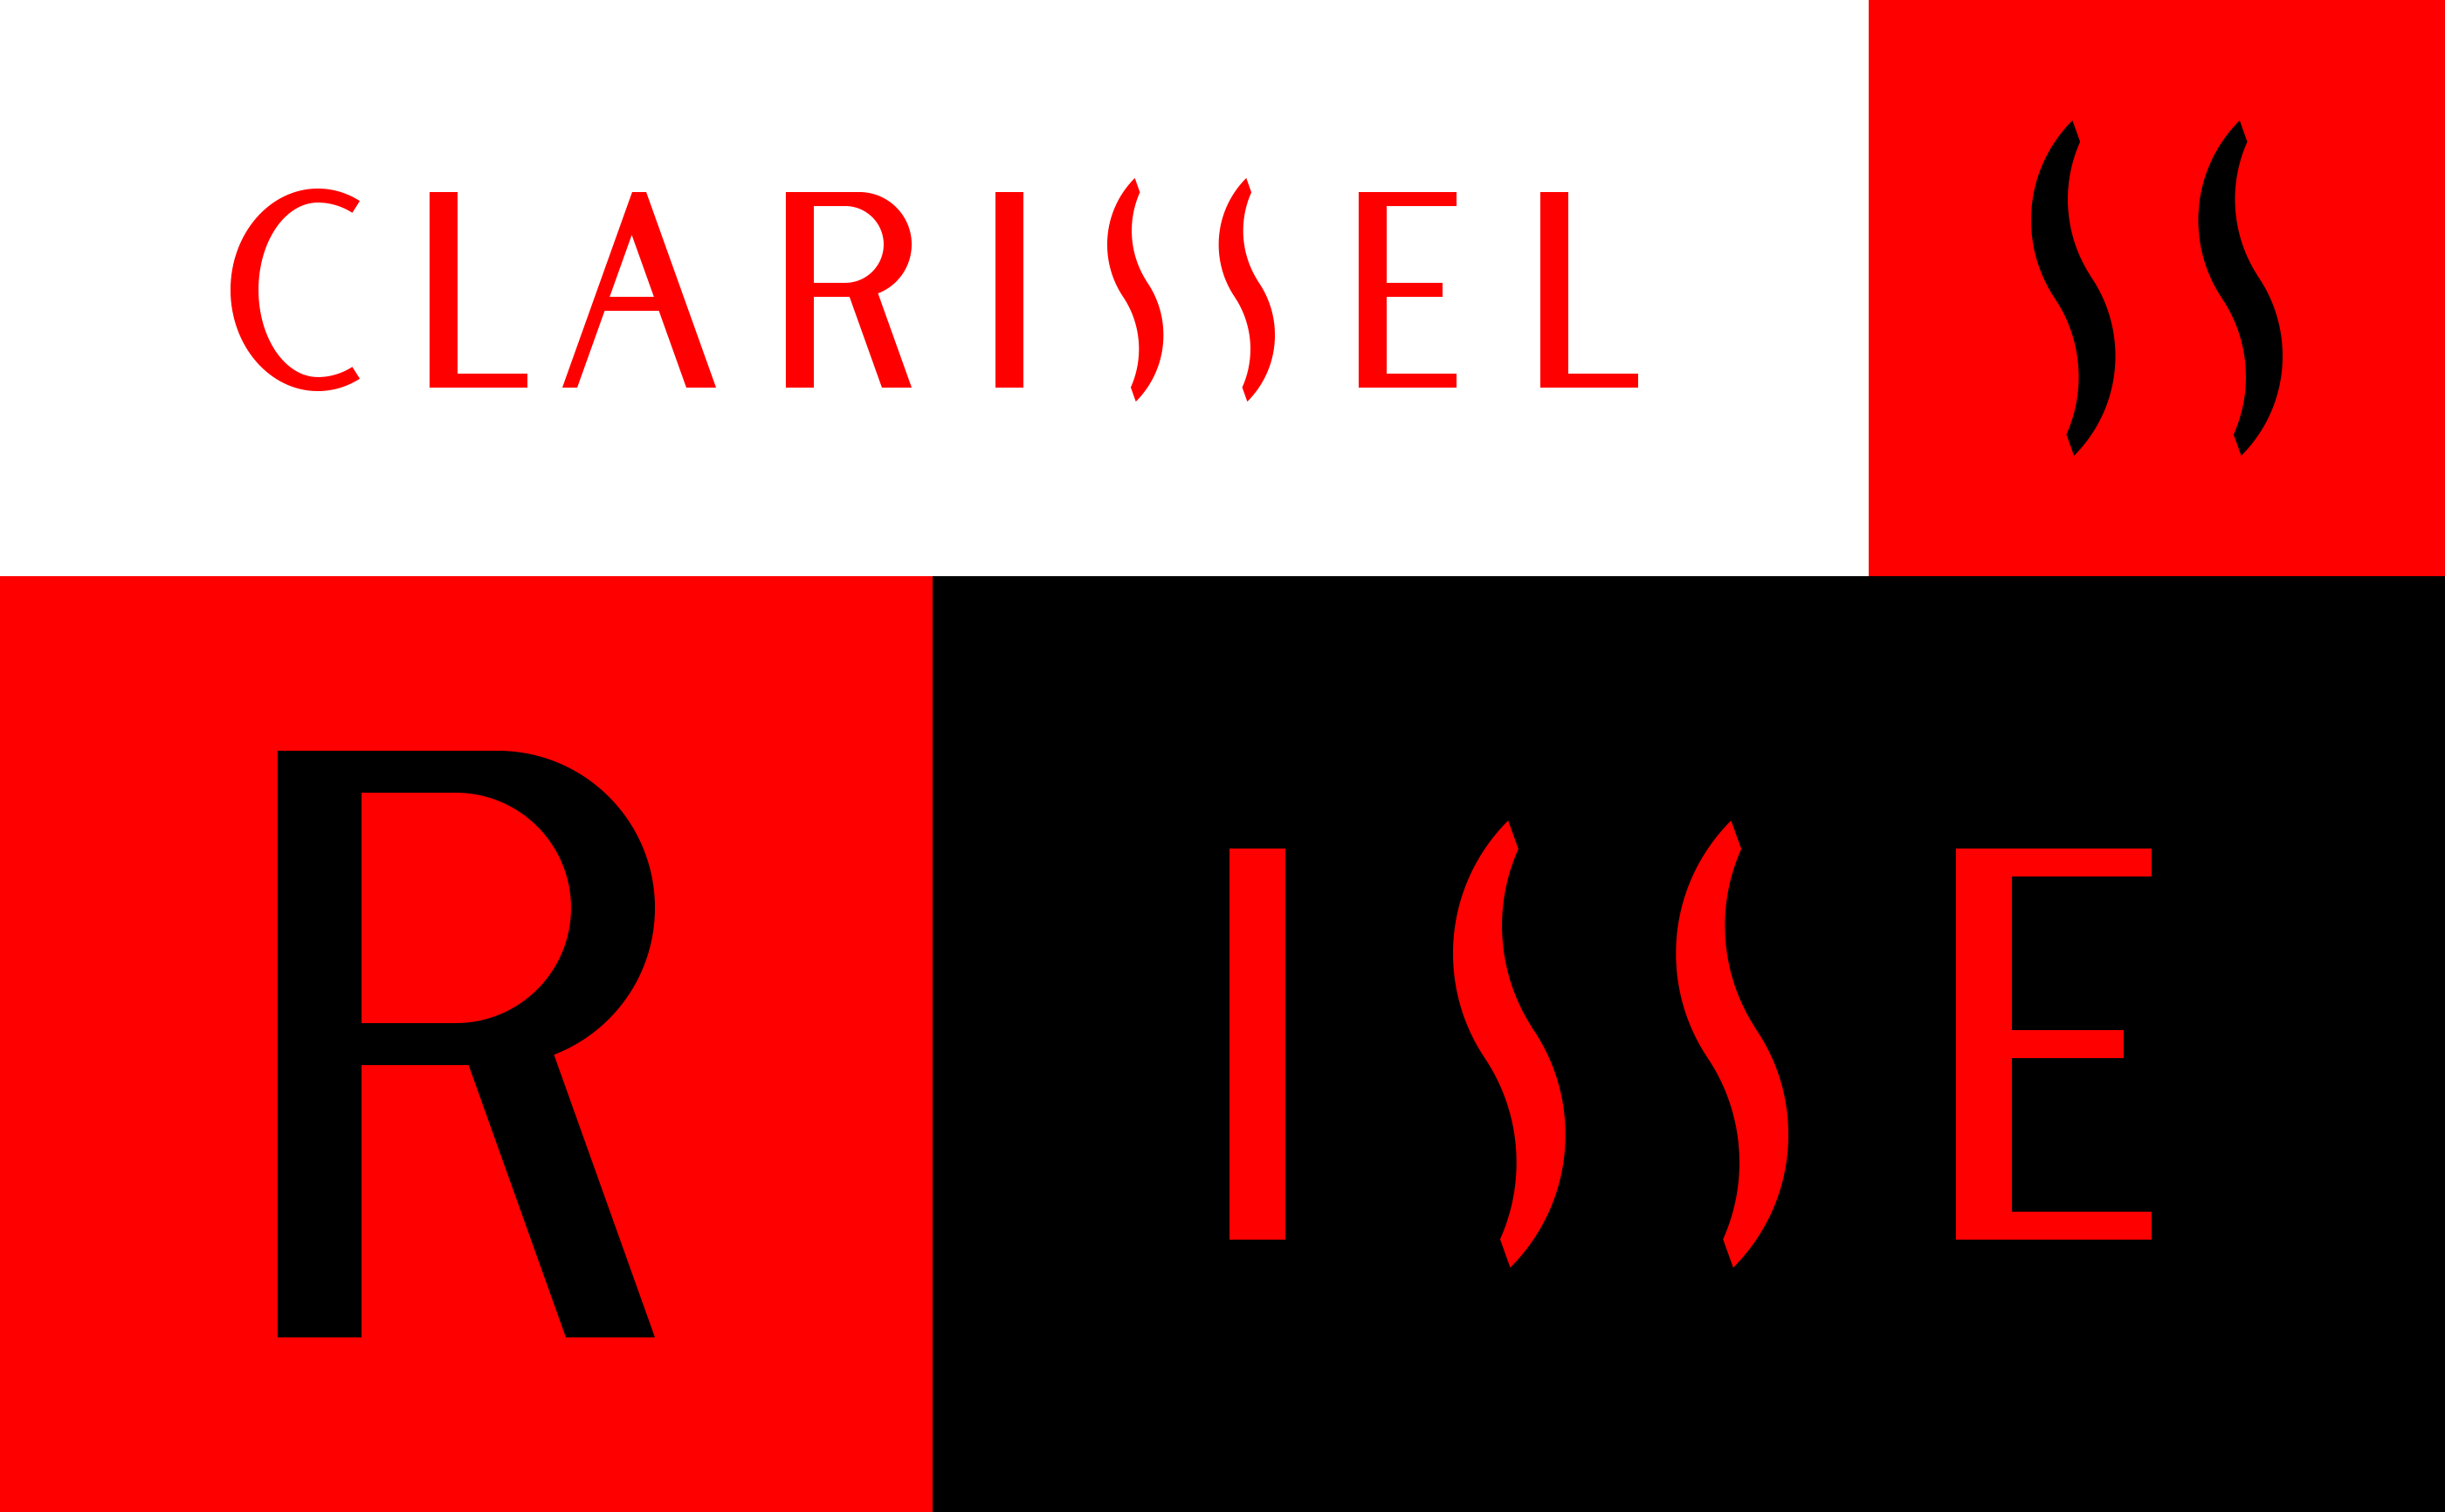 Clarissel-004